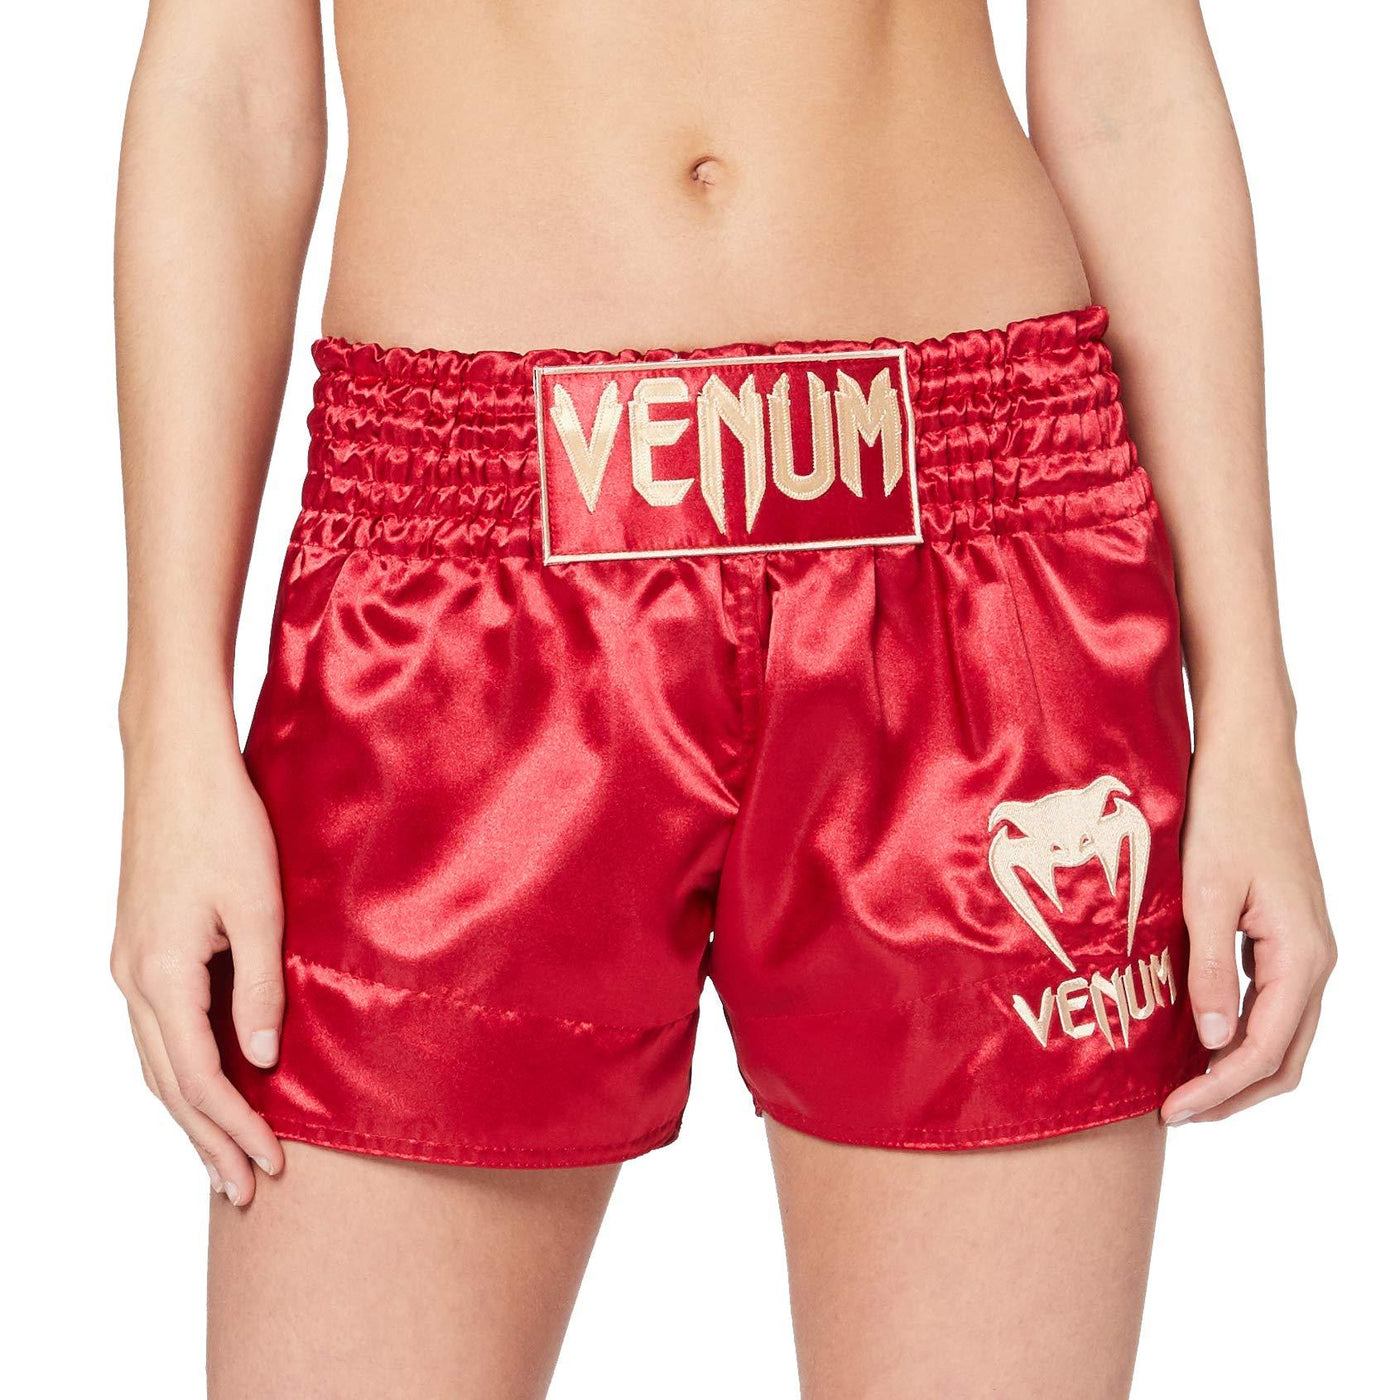 Muay Thai Short Classic - Venum